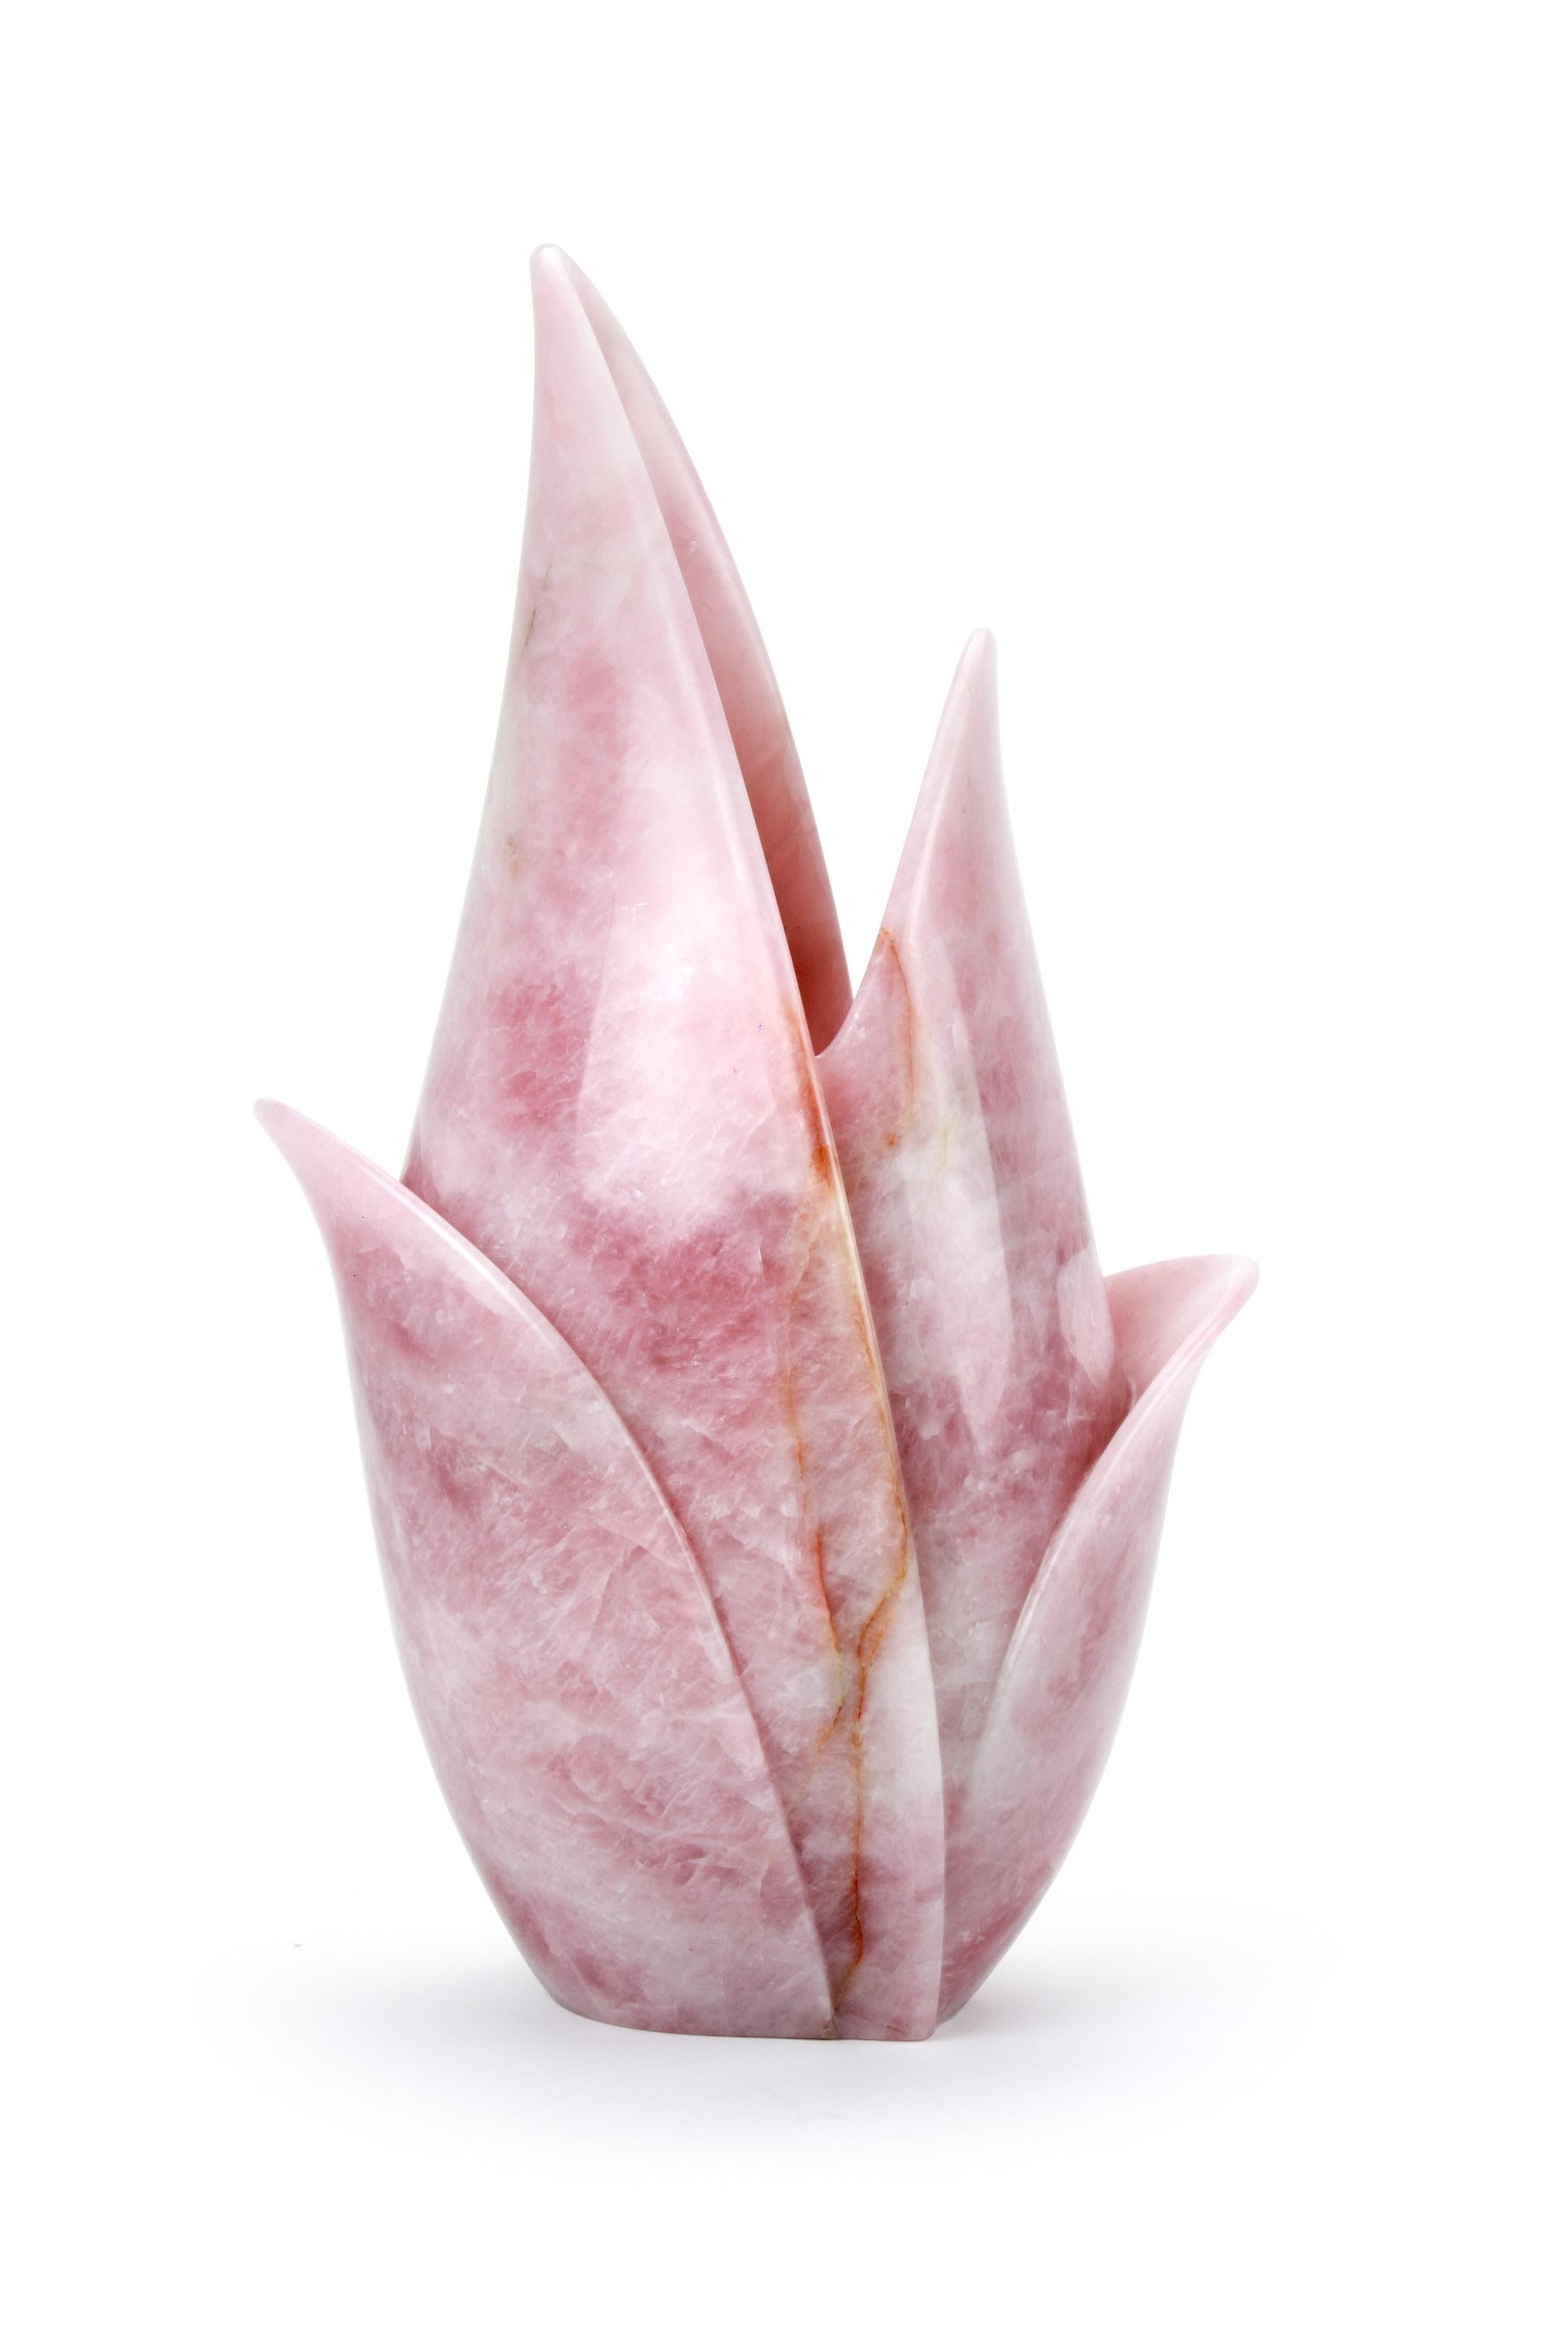 Important vase sculptural taillé à la main dans un bloc massif de quartz rose.

Dimensions du vase : L 29 x L 20 x H 53 cm. Disponible en différents onyx et marbres.

Édition limitée à 35 exemplaires.

Chaque vase est signé et numéroté à la main par